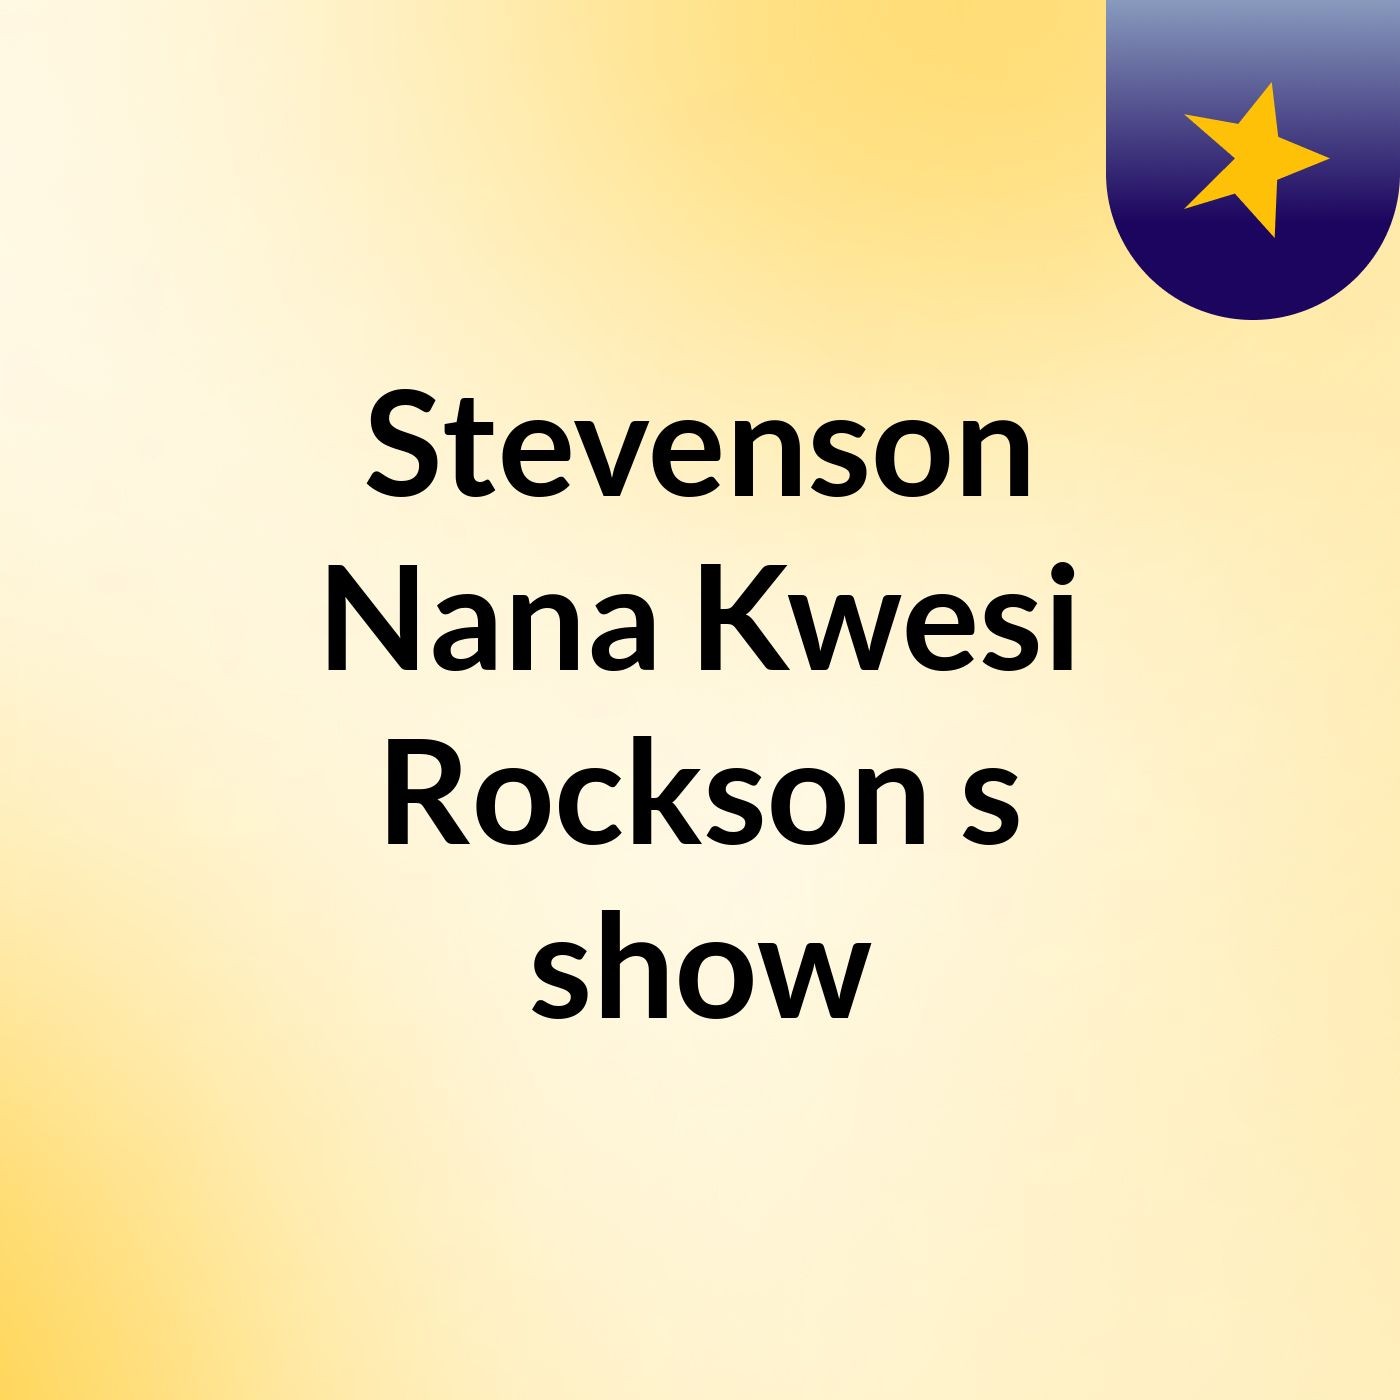 Stevenson Nana Kwesi Rockson's show